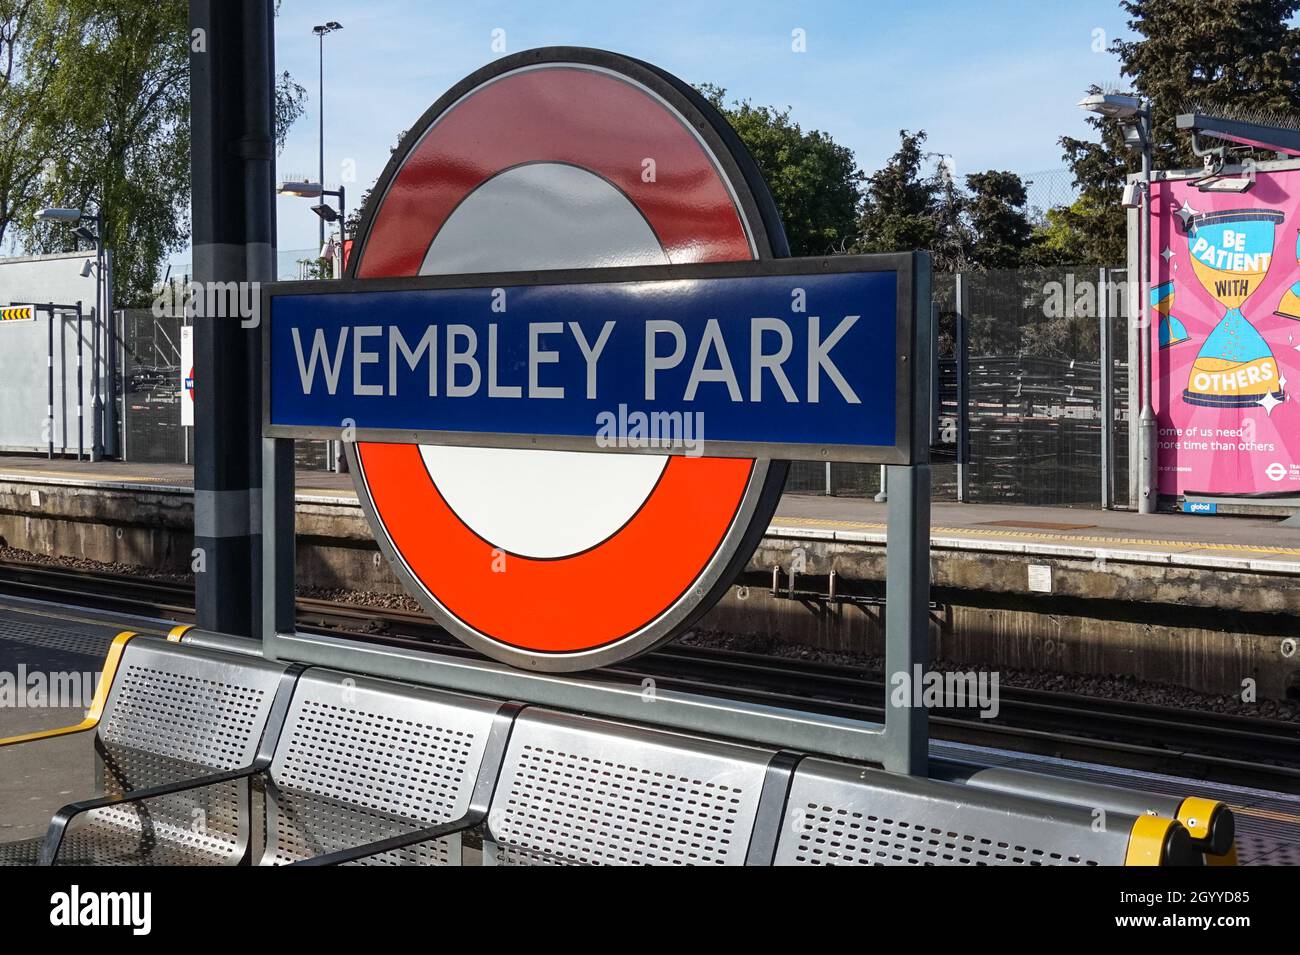 Wembley Park underground, tube station sign London England United Kingdom UK Stock Photo